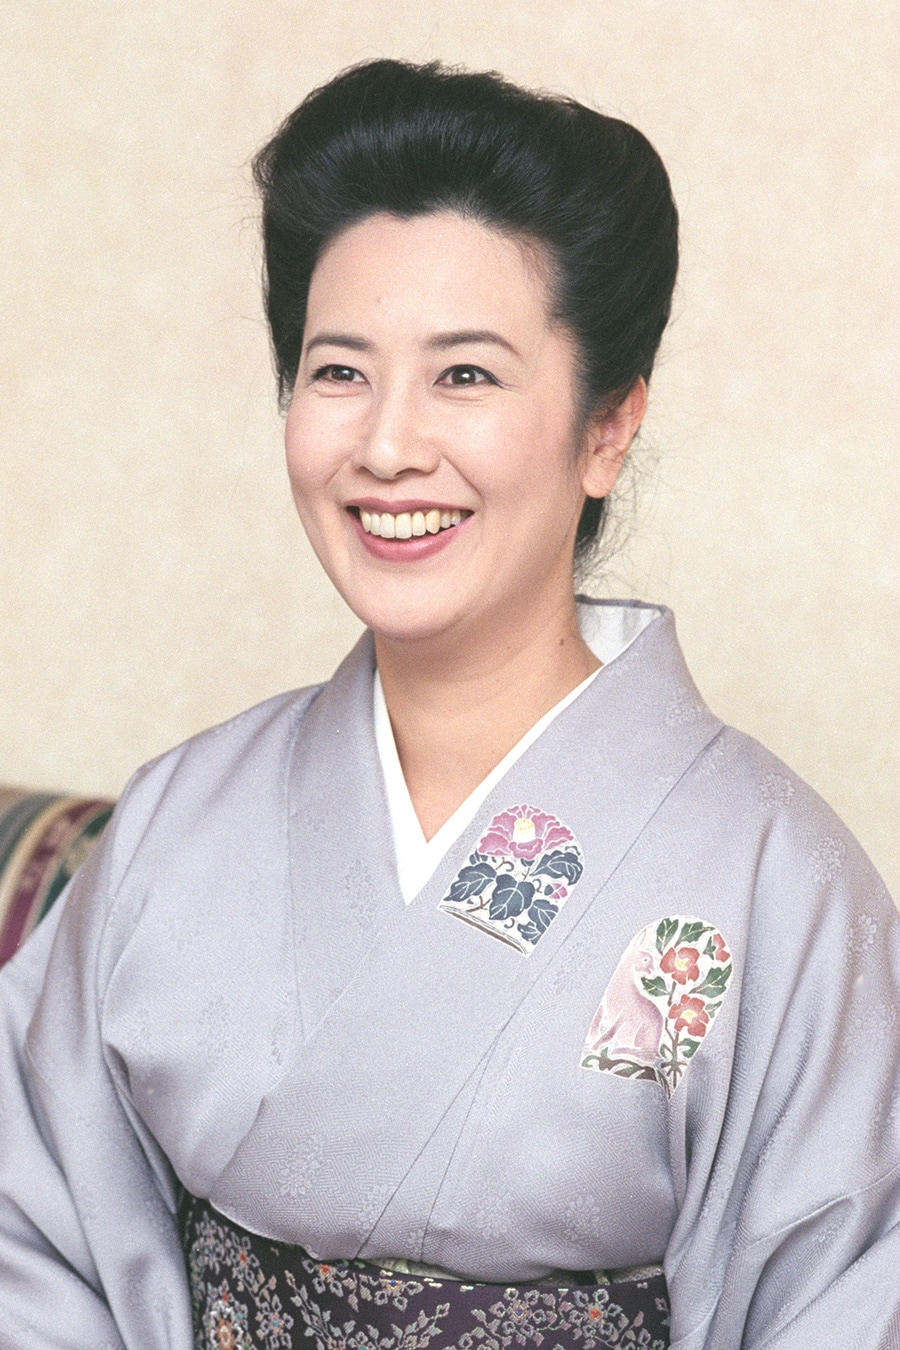 2時間ドラマにおける名取裕子の代表作としては、フジテレビ系「金曜エンタテイメント」の「地獄の花嫁」シリーズ(99～2004年)などが挙げられる。松本清張作品への起用も多い。